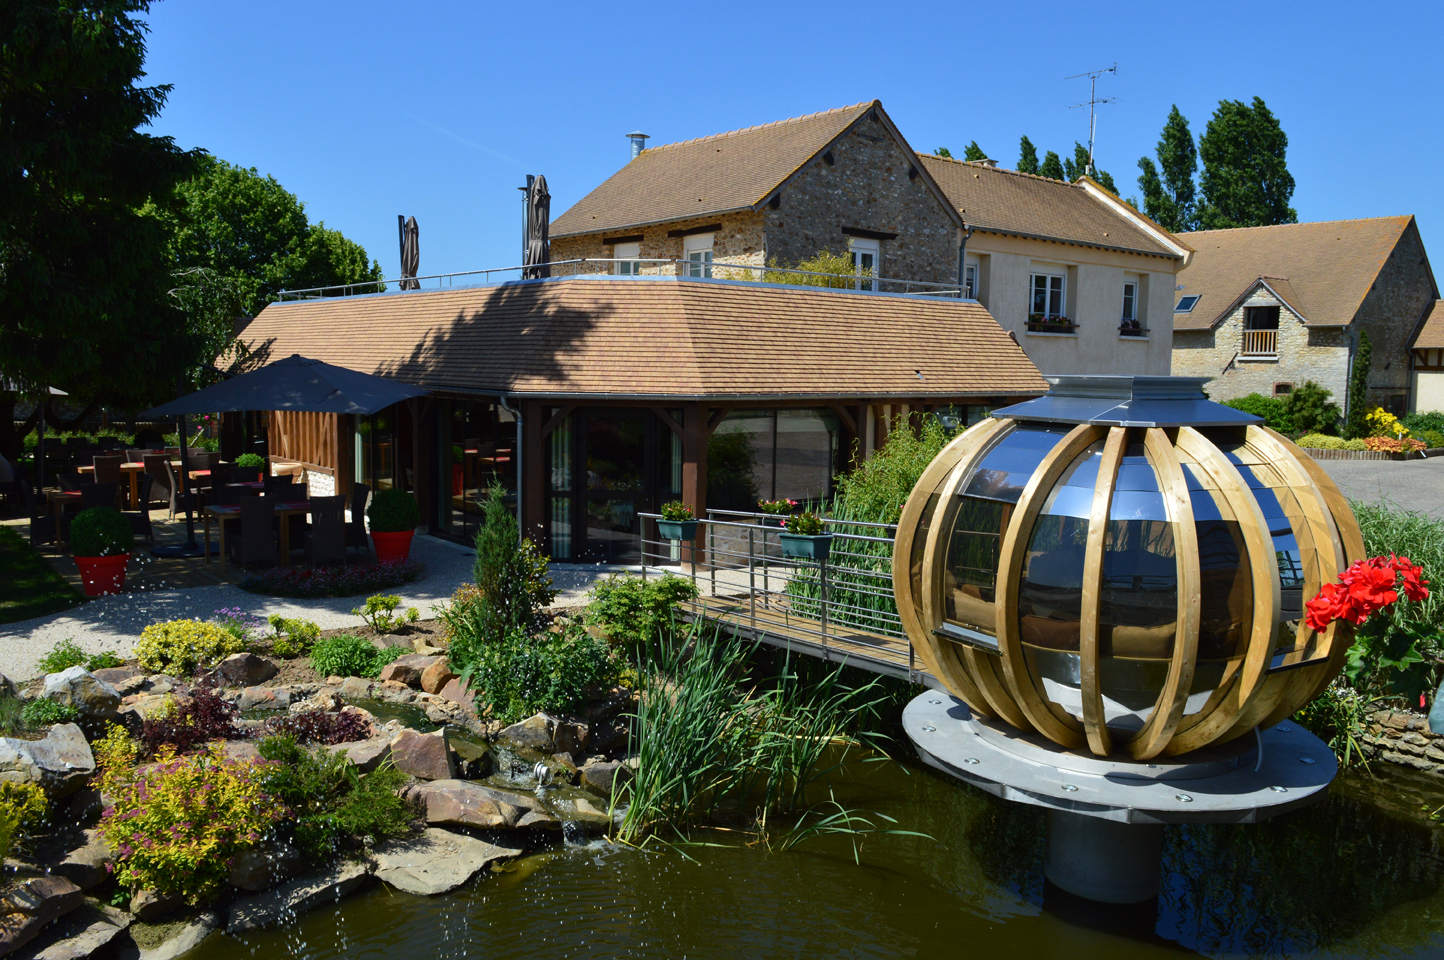 Extérieur de la bulle Restaurant le Millésime gactronomique Menilles Giverny Domaine de la Haie des Granges repas  déjeuner et diner  nsolites